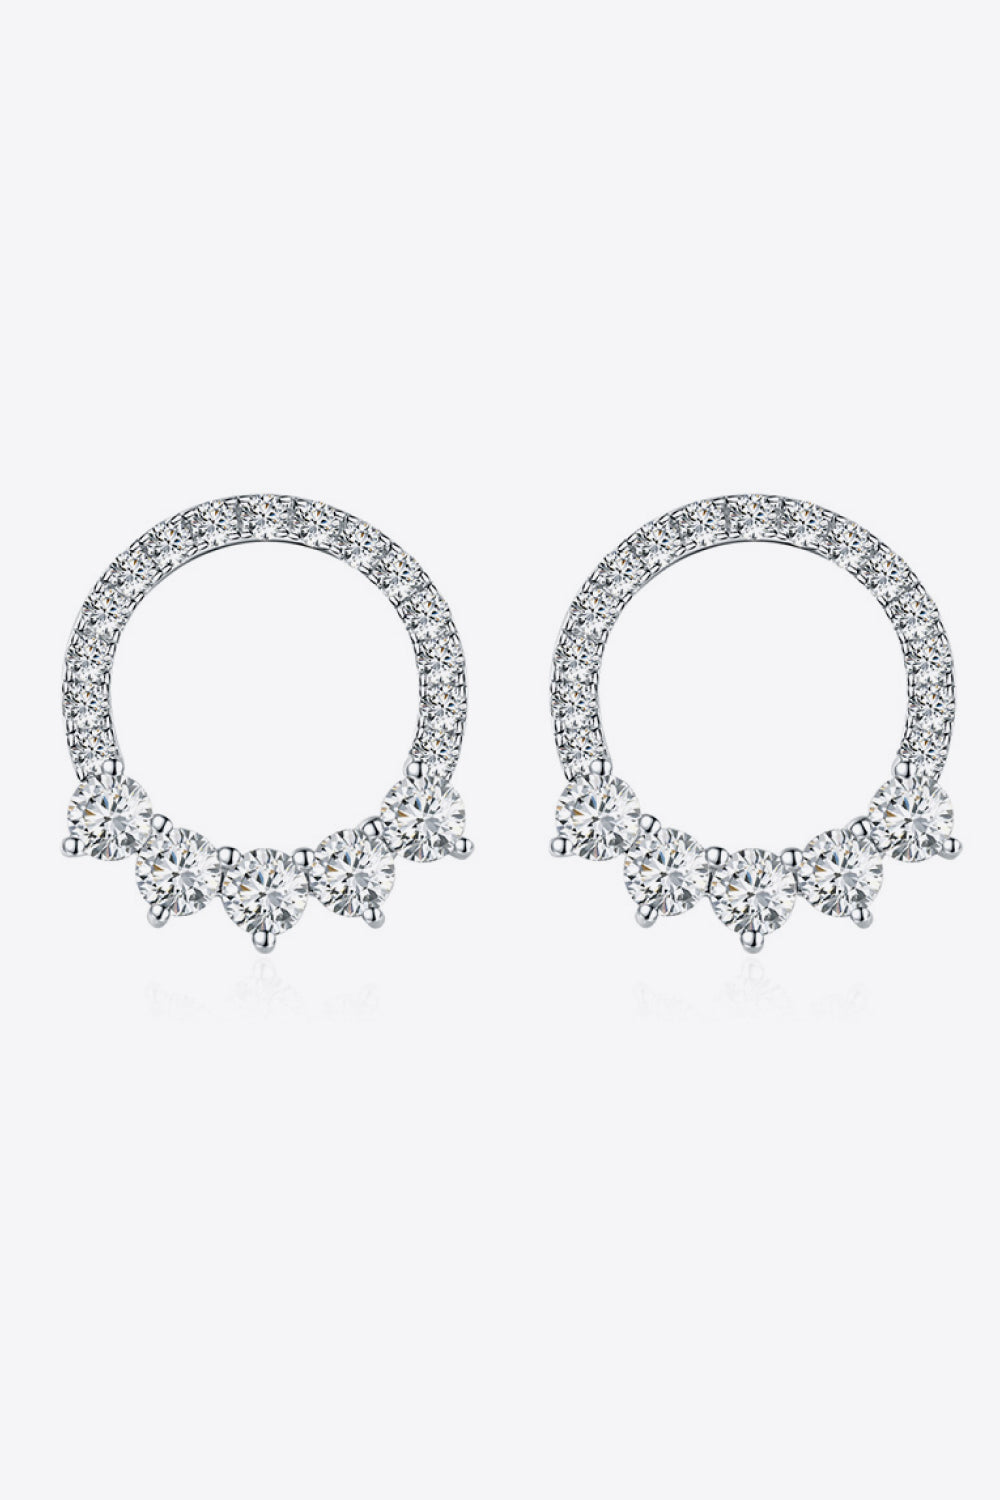 Moissanite Earrings-Moissanite Platinum-Plated Earrings